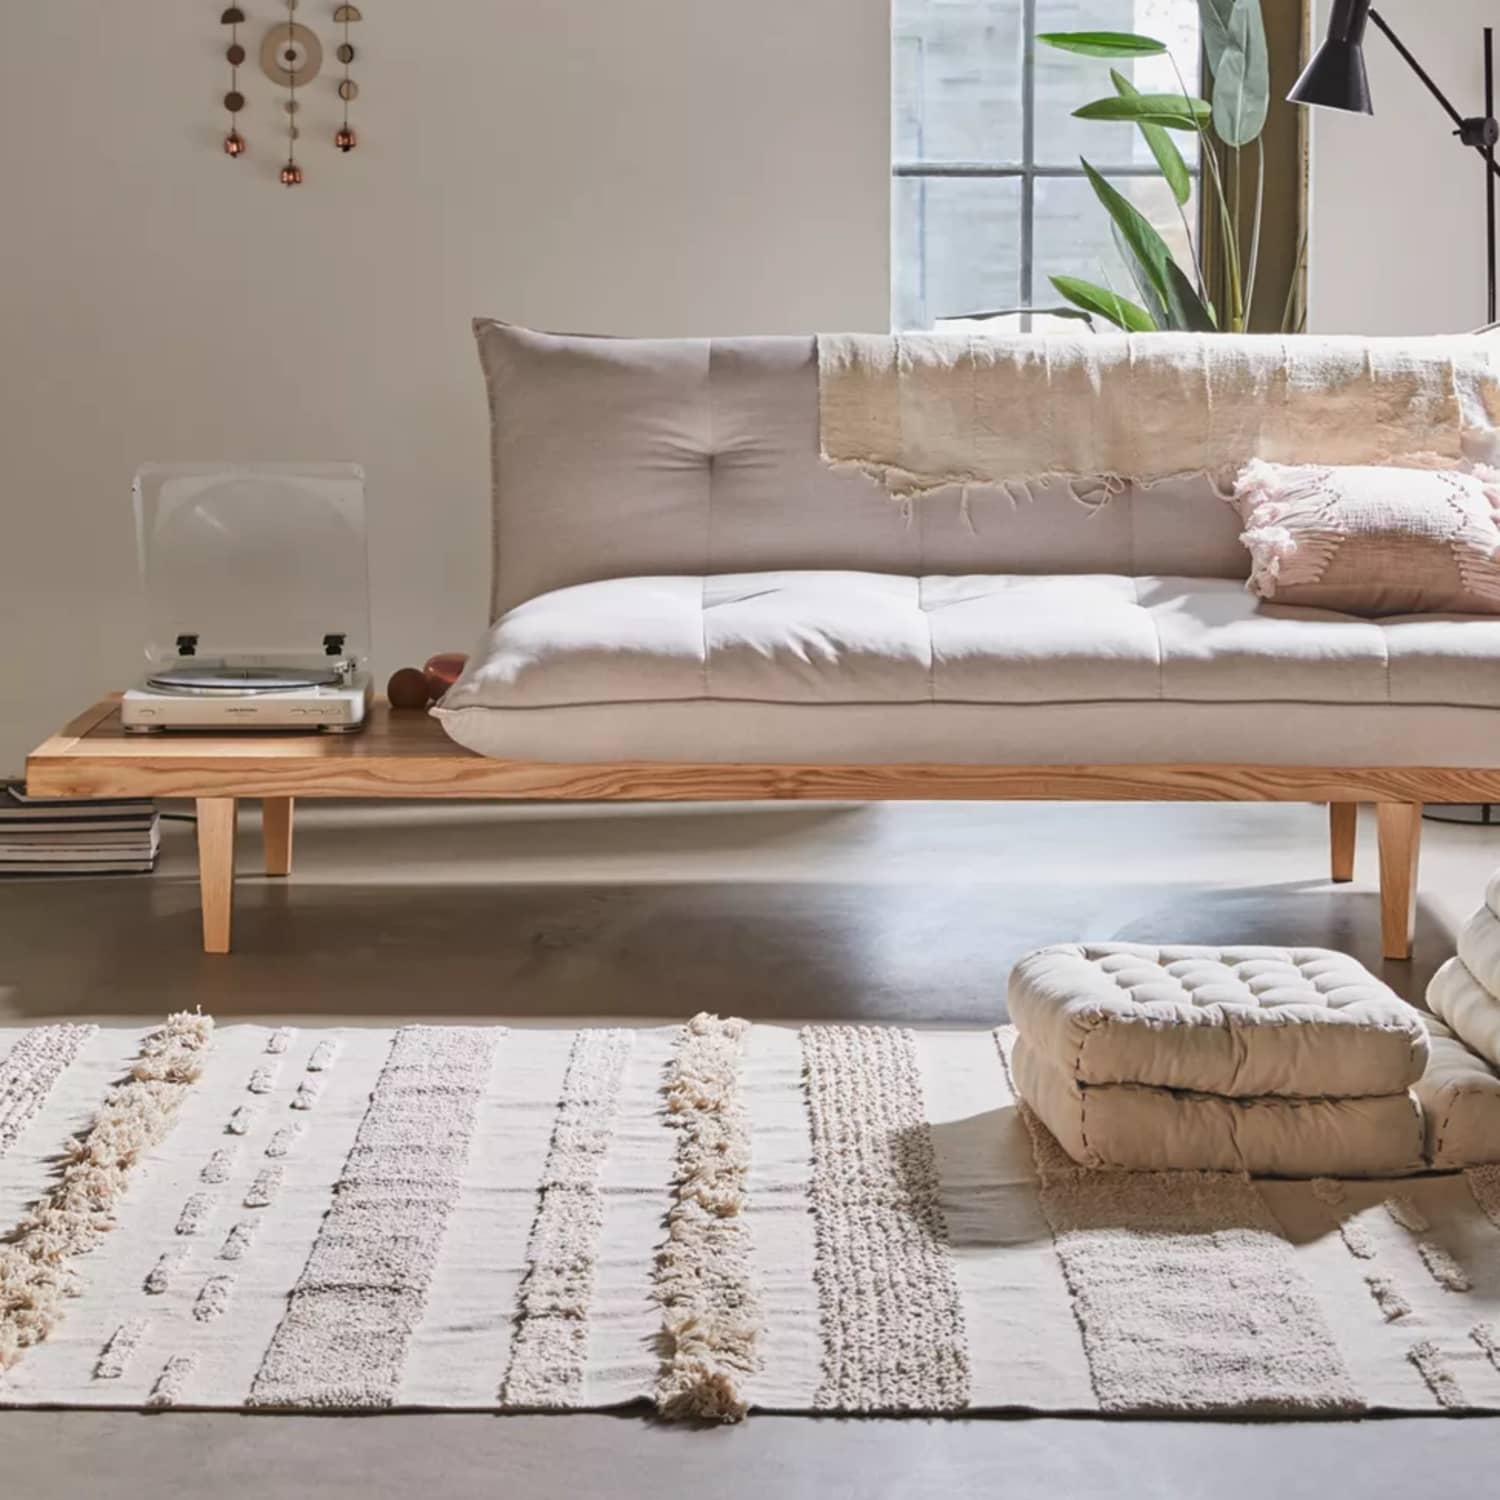 Ik denk dat ik ziek ben rammelaar Vaag This New Old Sofa Silhouette Could Free Up Space in Your Living Room |  Apartment Therapy